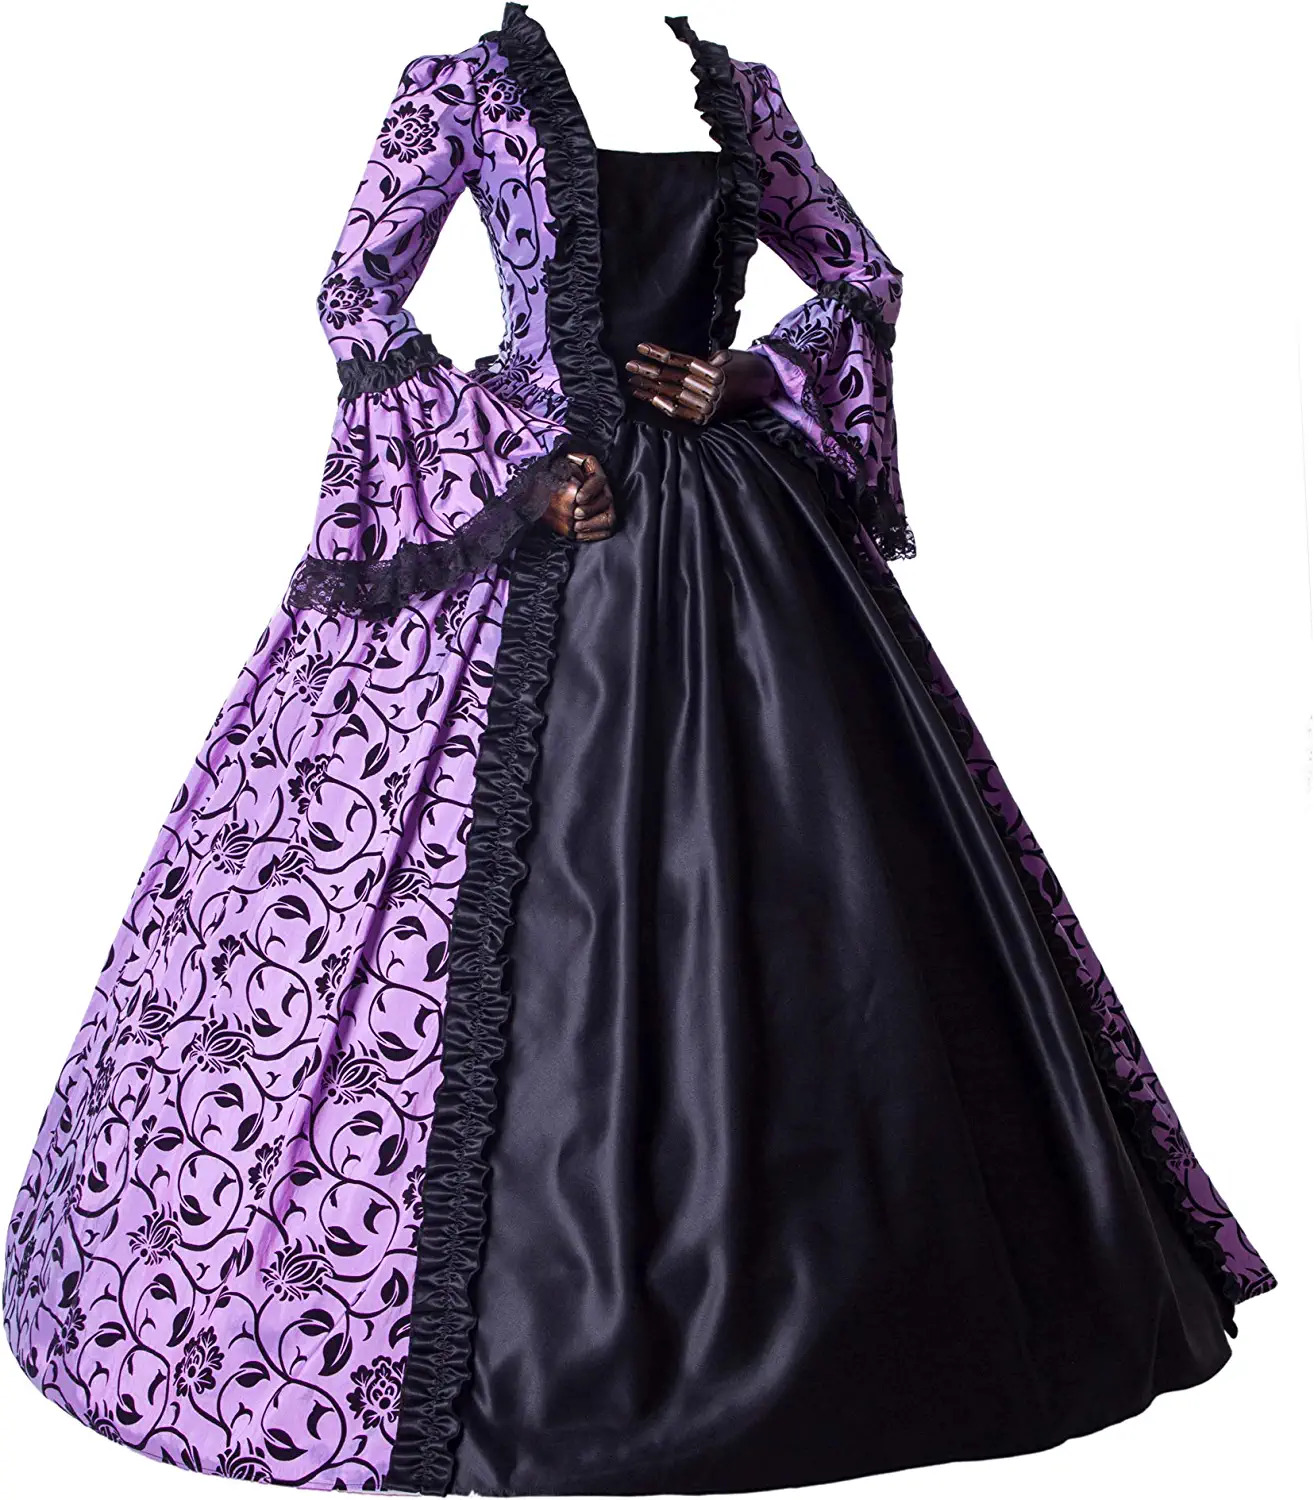 Marie Antoinette Princess Dress Period Ball Gown Reenactment Theater Dress Broca